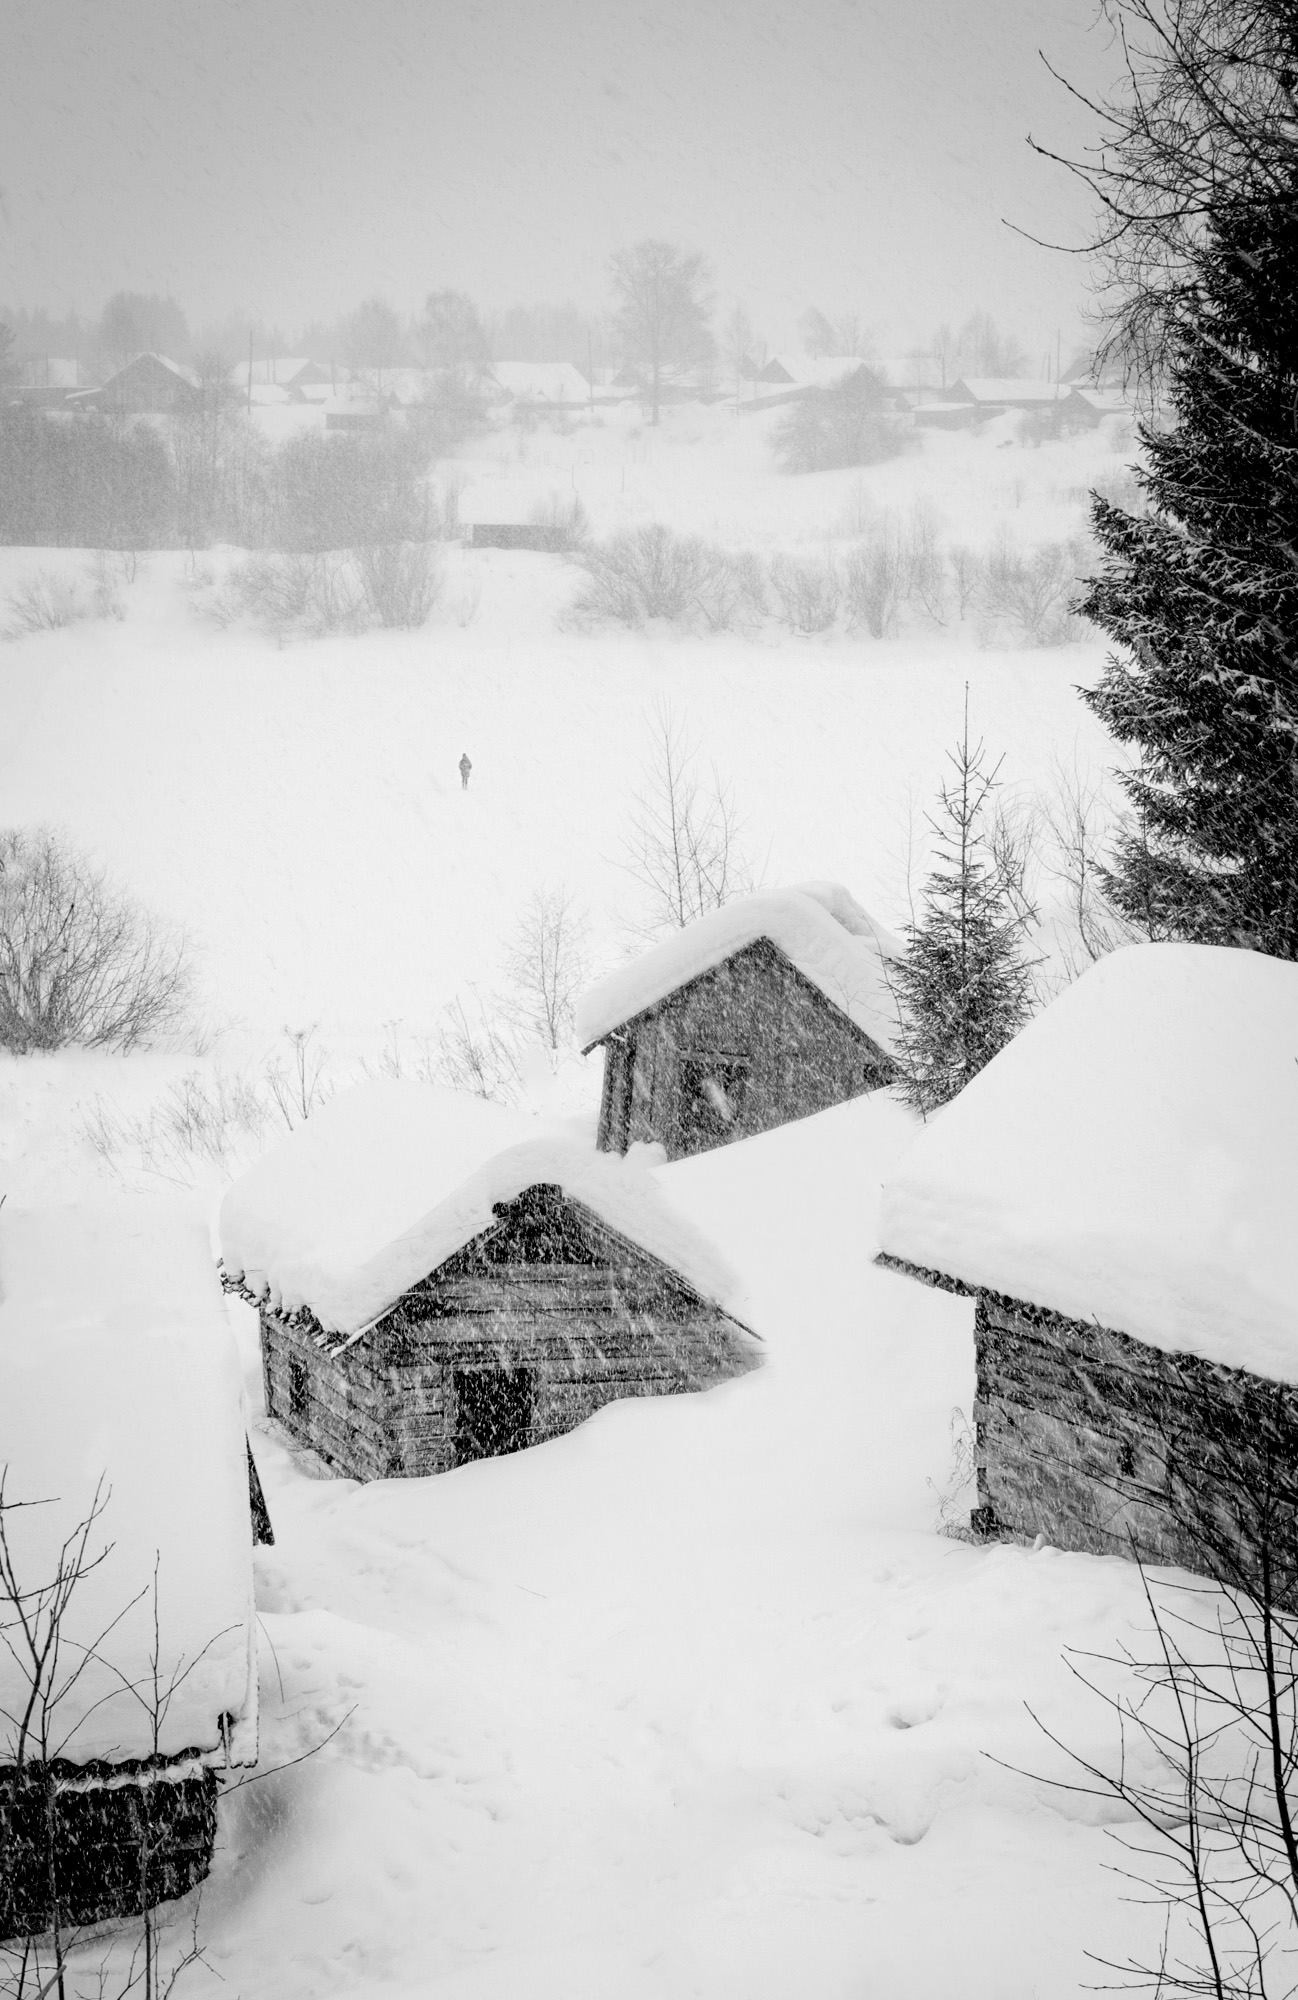 Des maisons abandonnées dans le village de Chelokhovskaïa

